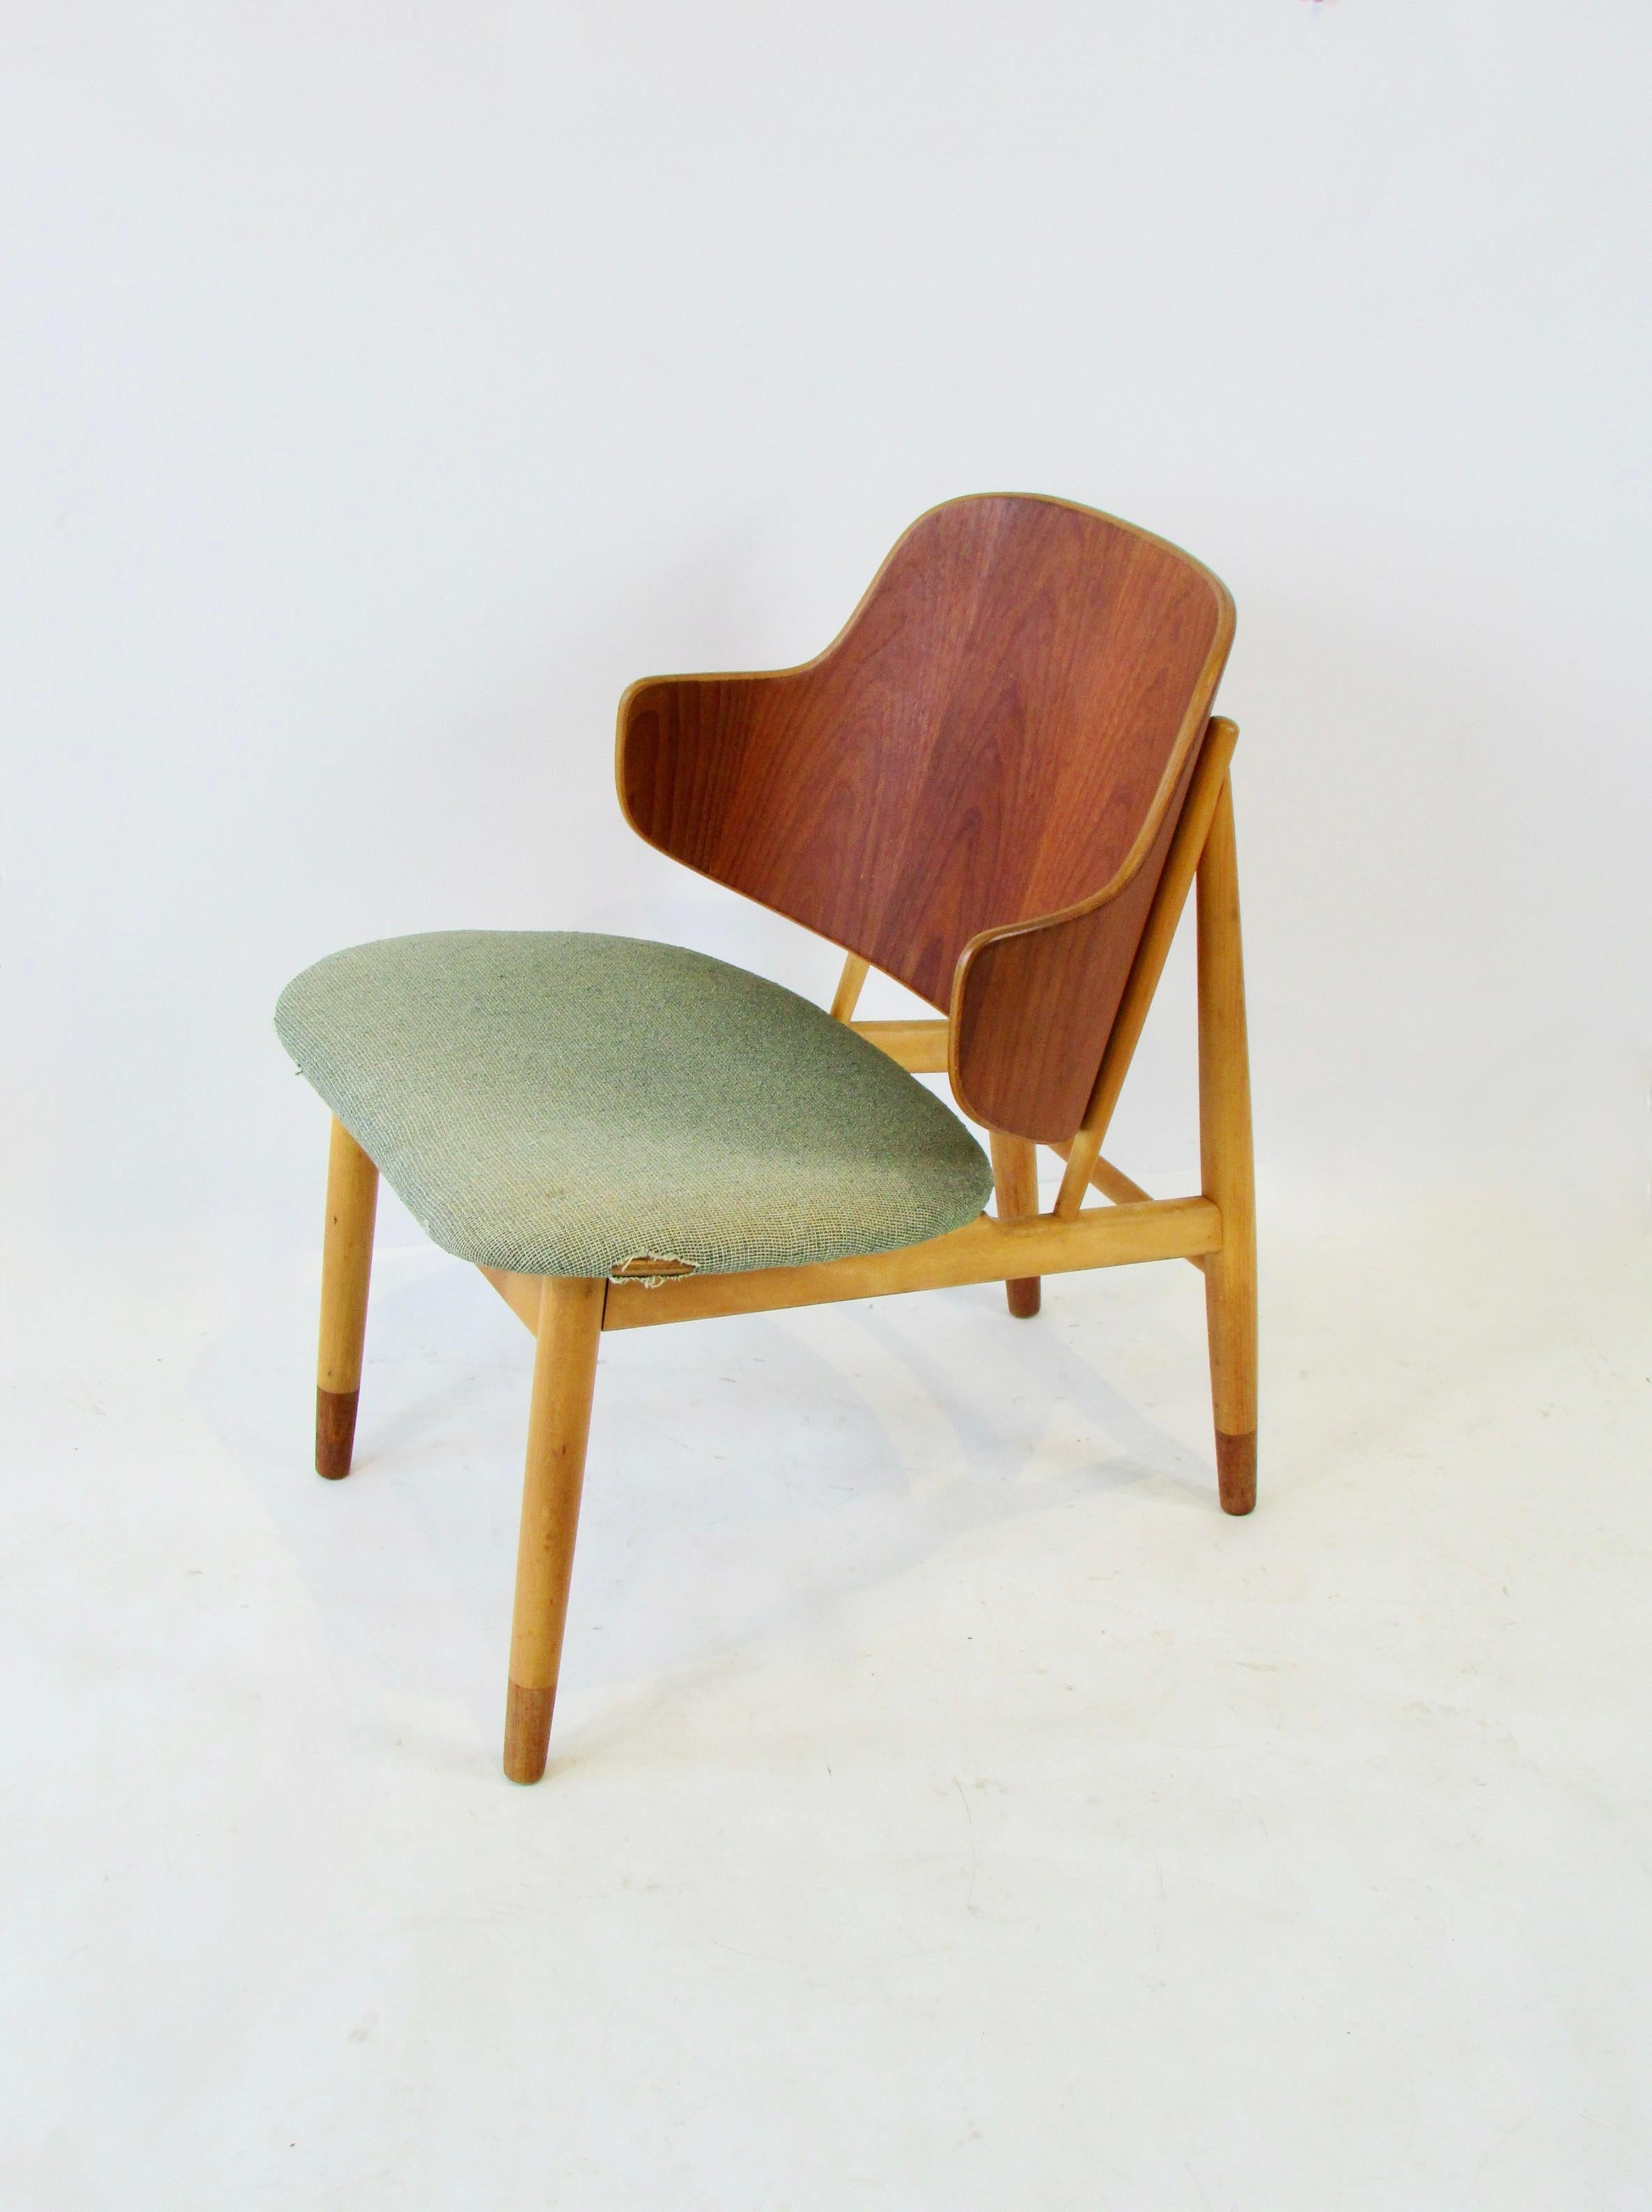 
Ib Kofod-Larsen design Stuhl hergestellt von Christiansen & Larsen . Entworfen in den frühen 1950er Jahren von Kofod Larsen und hergestellt von Christensen & Larsen A/S in Dänemark. Ein Klassiker  sauber und  ein raffiniertes Beispiel für das